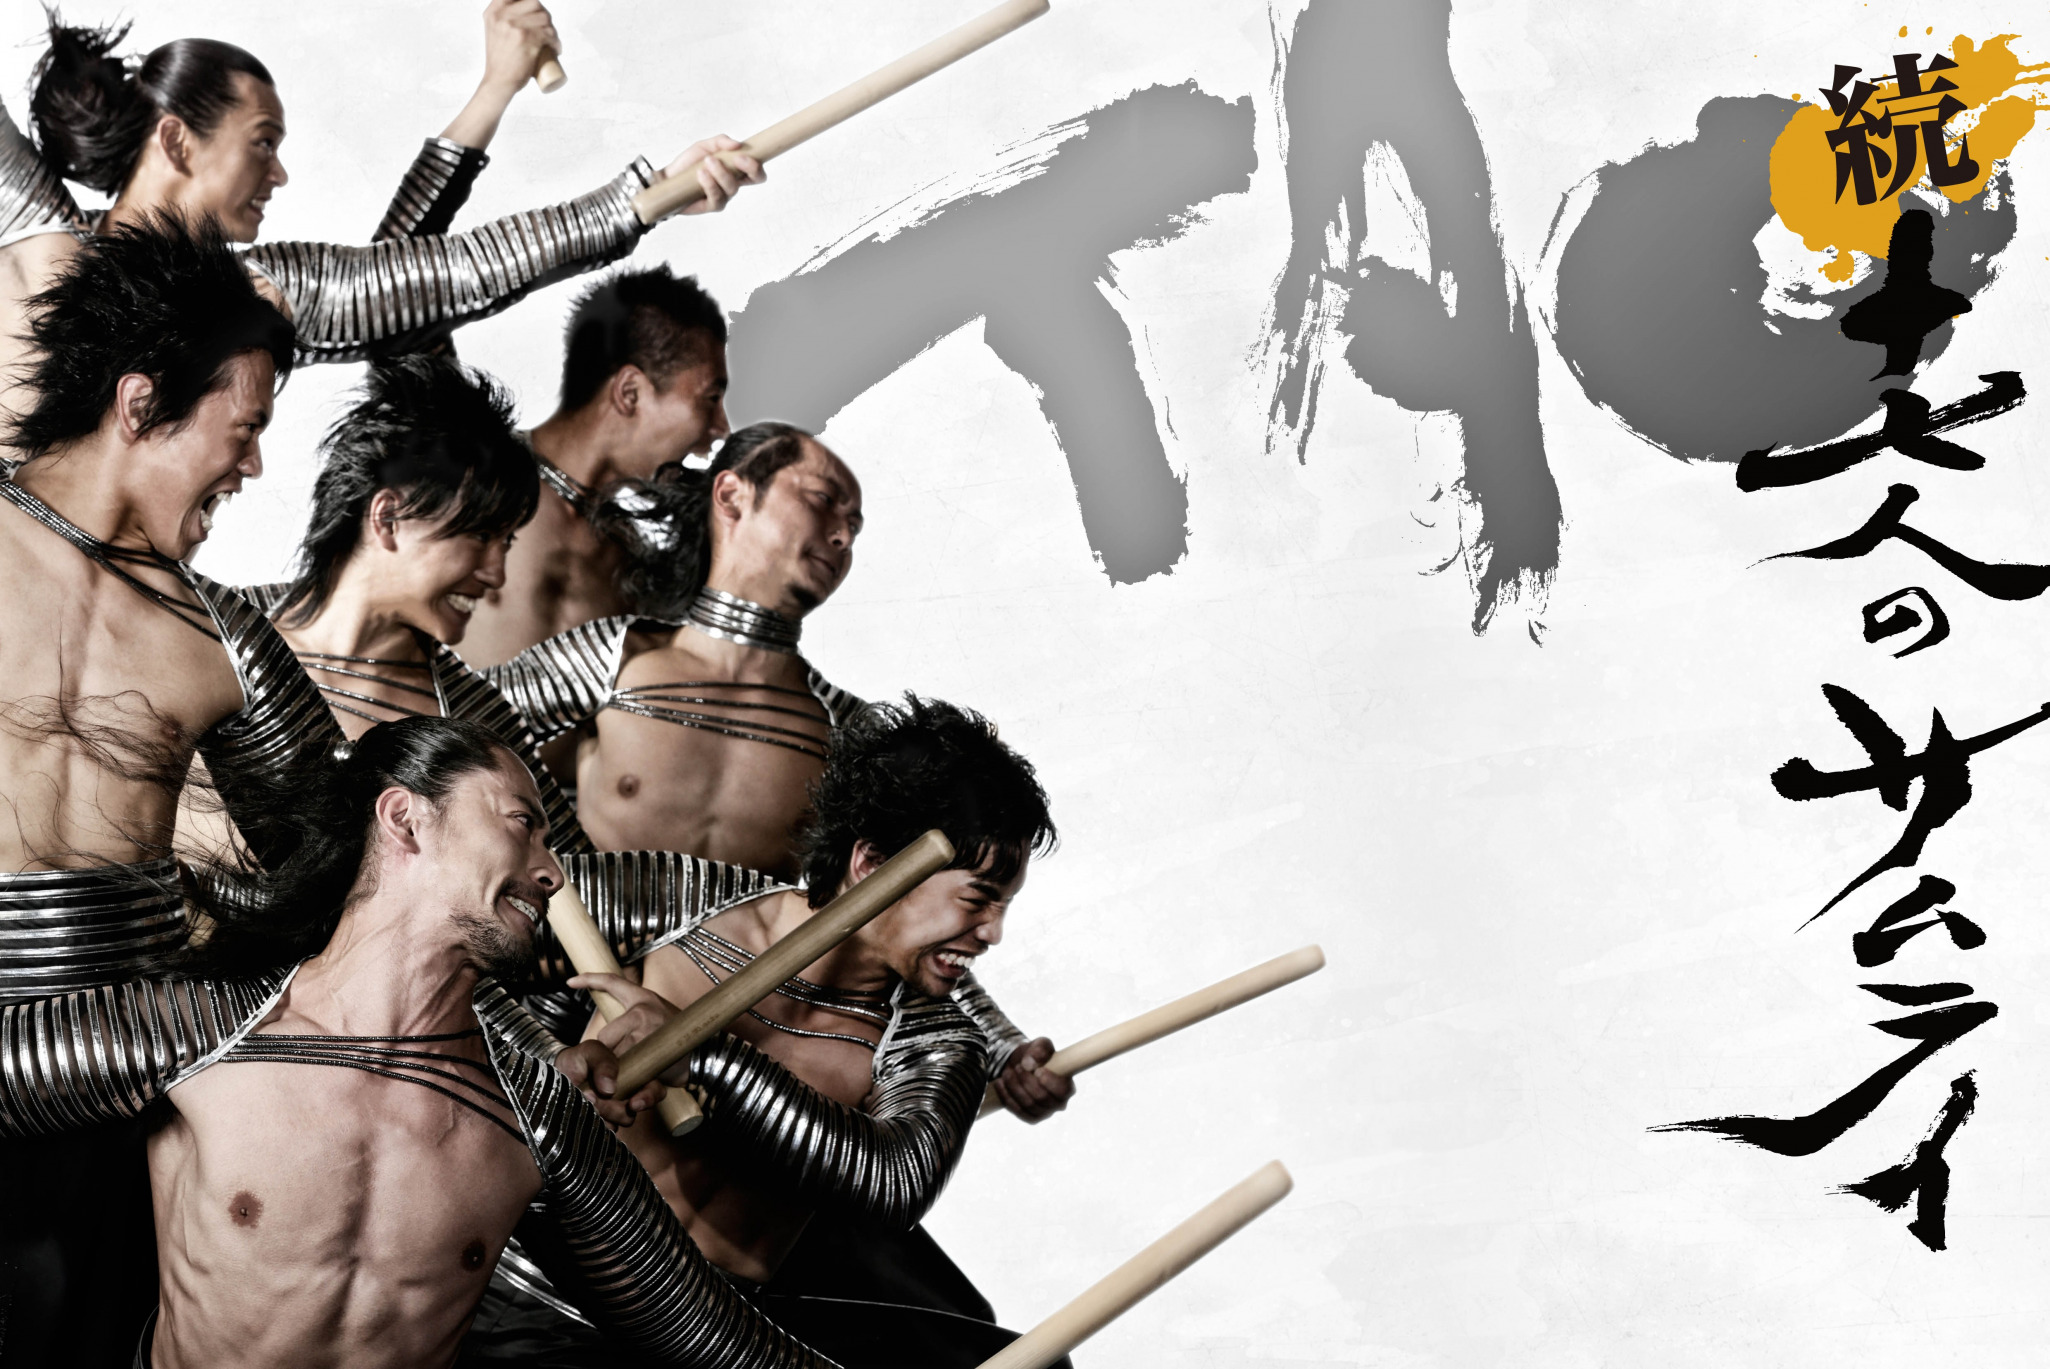 Tao, the samurai of the drum, el arte de la percusión japonesa tradicional en el Teatro Romea